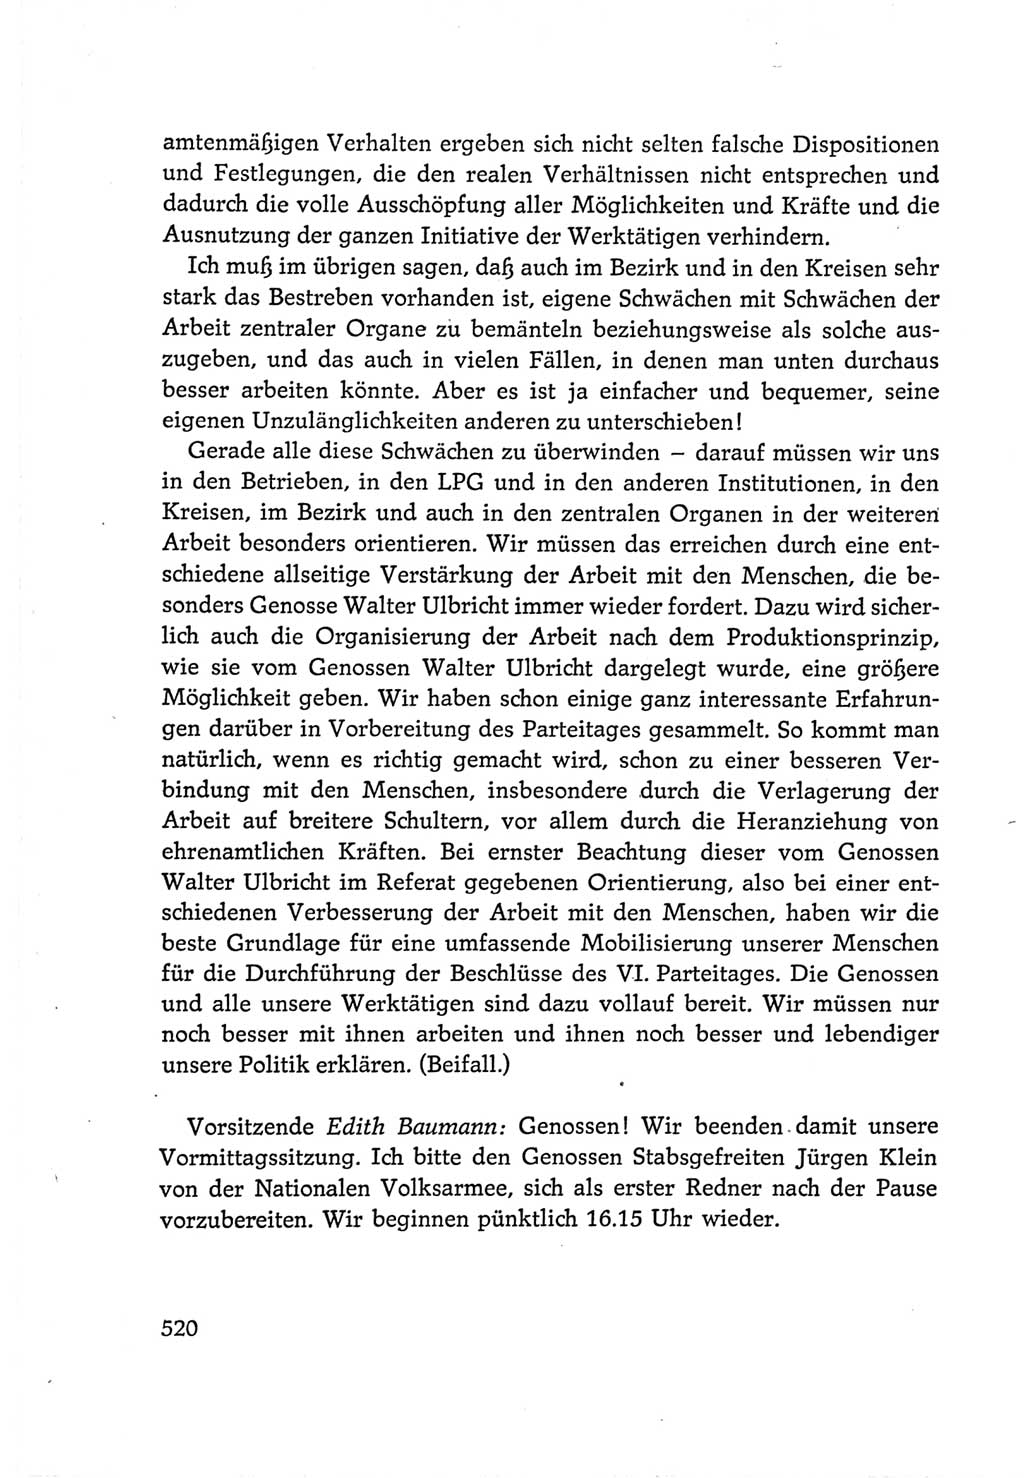 Protokoll der Verhandlungen des Ⅵ. Parteitages der Sozialistischen Einheitspartei Deutschlands (SED) [Deutsche Demokratische Republik (DDR)] 1963, Band Ⅰ, Seite 520 (Prot. Verh. Ⅵ. PT SED DDR 1963, Bd. Ⅰ, S. 520)